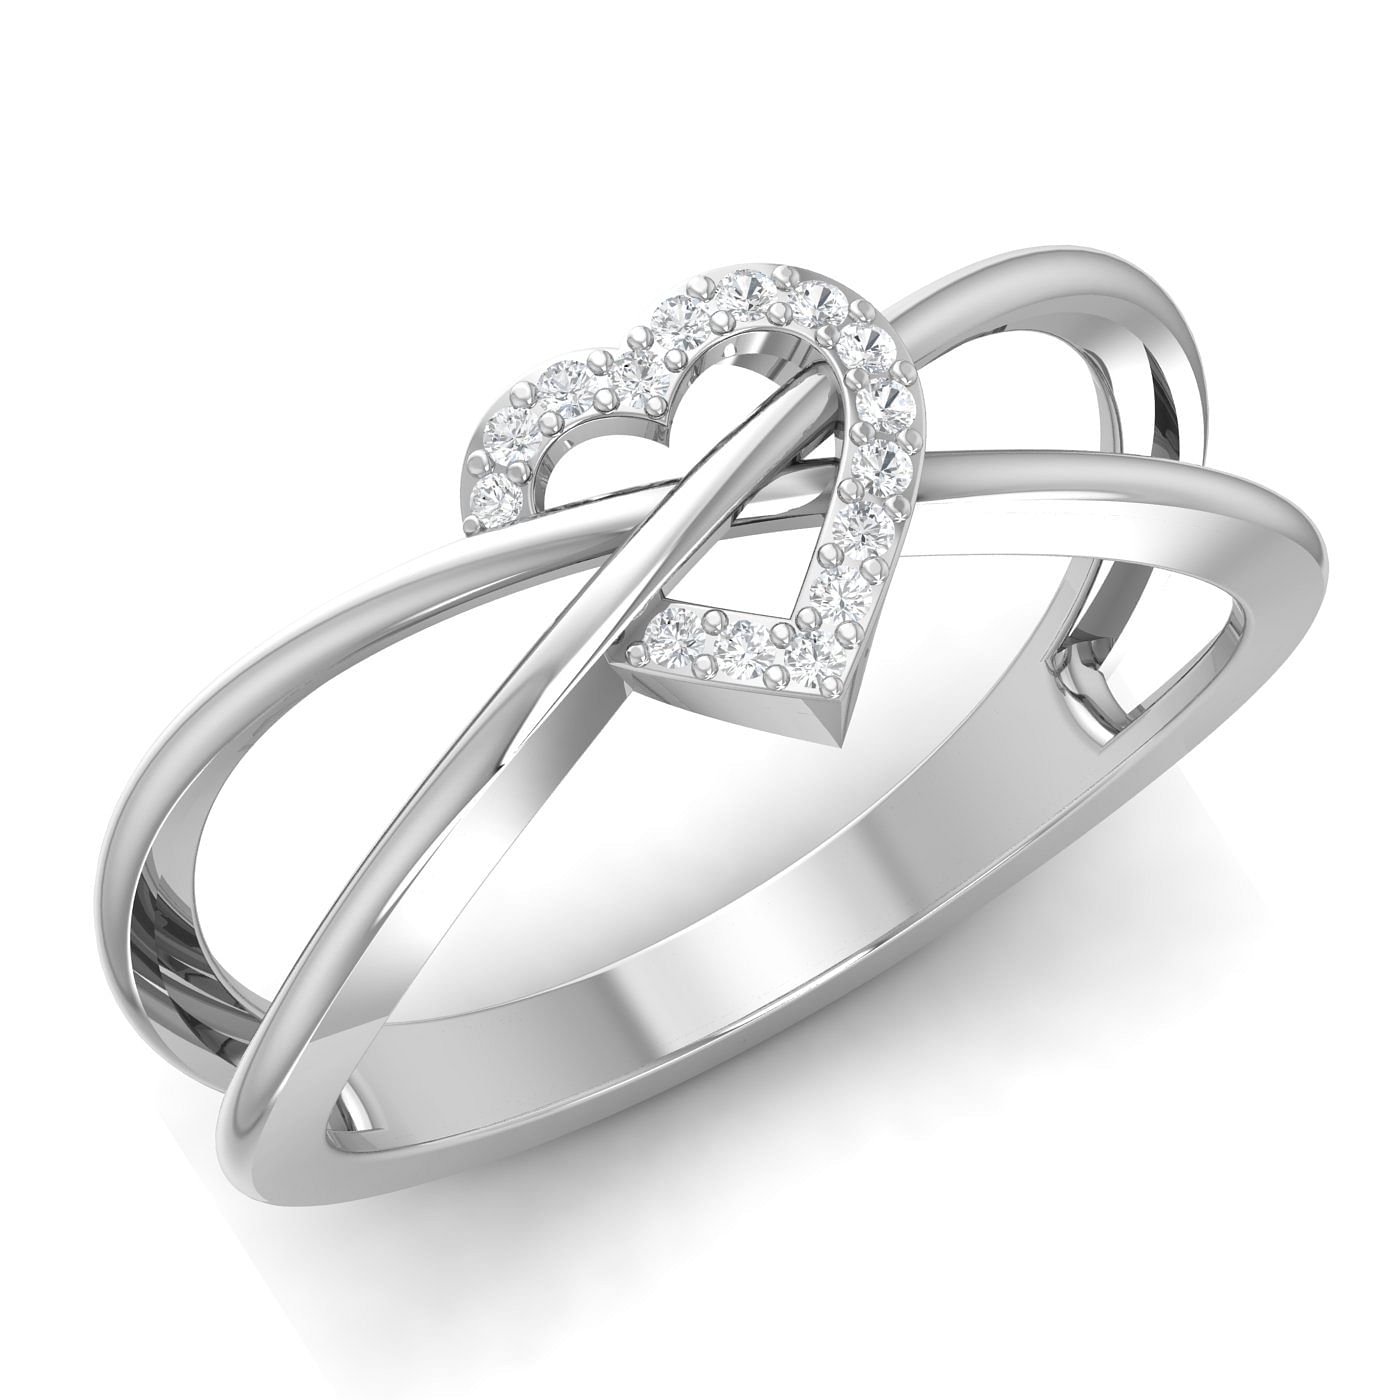 Diamond Heart Promise Ring White Gold For Anniversary Gift